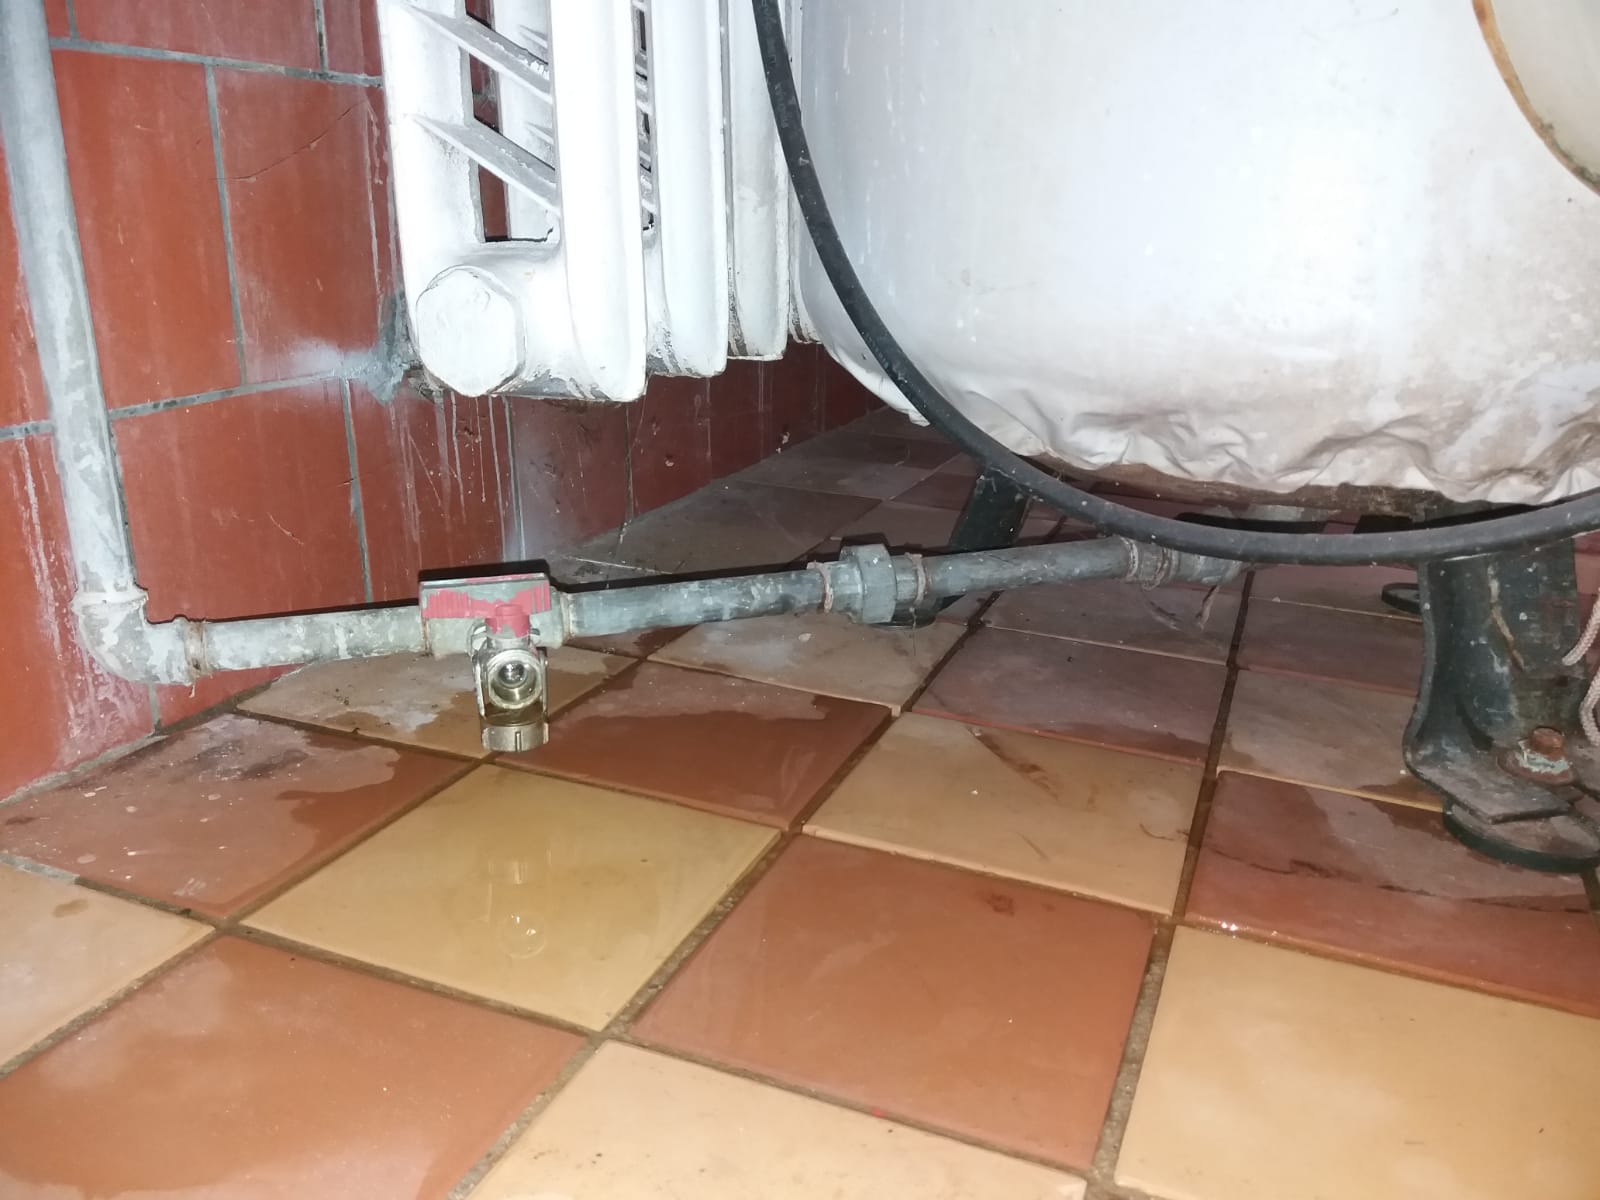 Alte Wasserleitung in Küche durchtrennen und verschließen